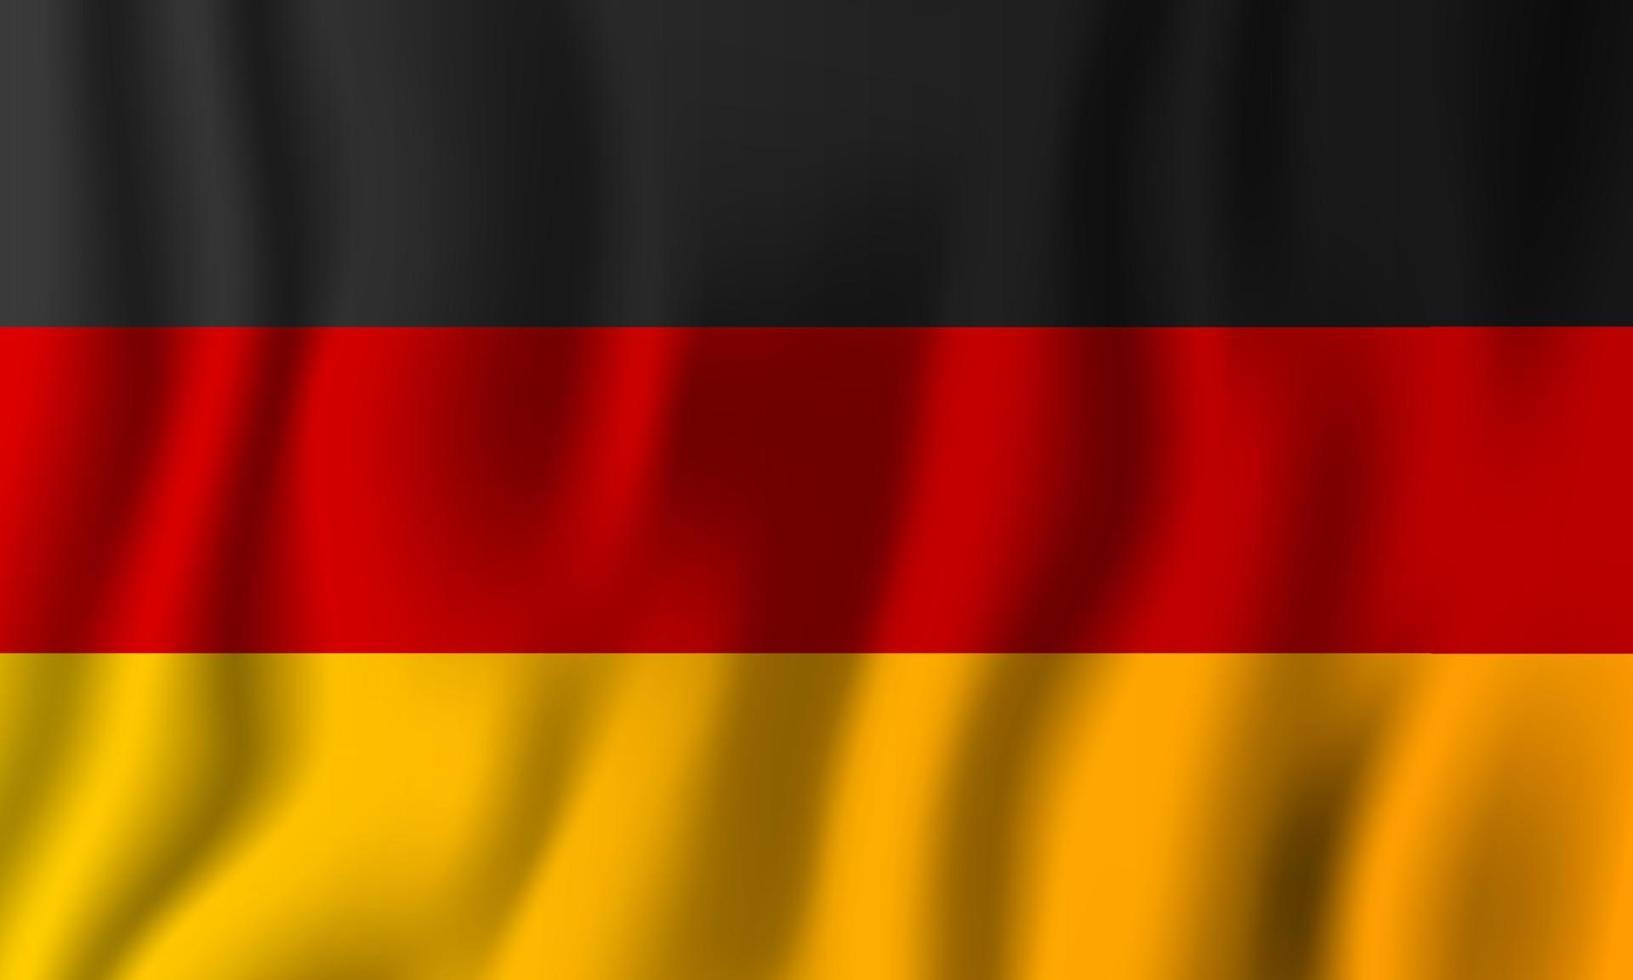 Ilustración de vector de bandera ondeante realista de Alemania. símbolo de fondo del país nacional. día de la Independencia